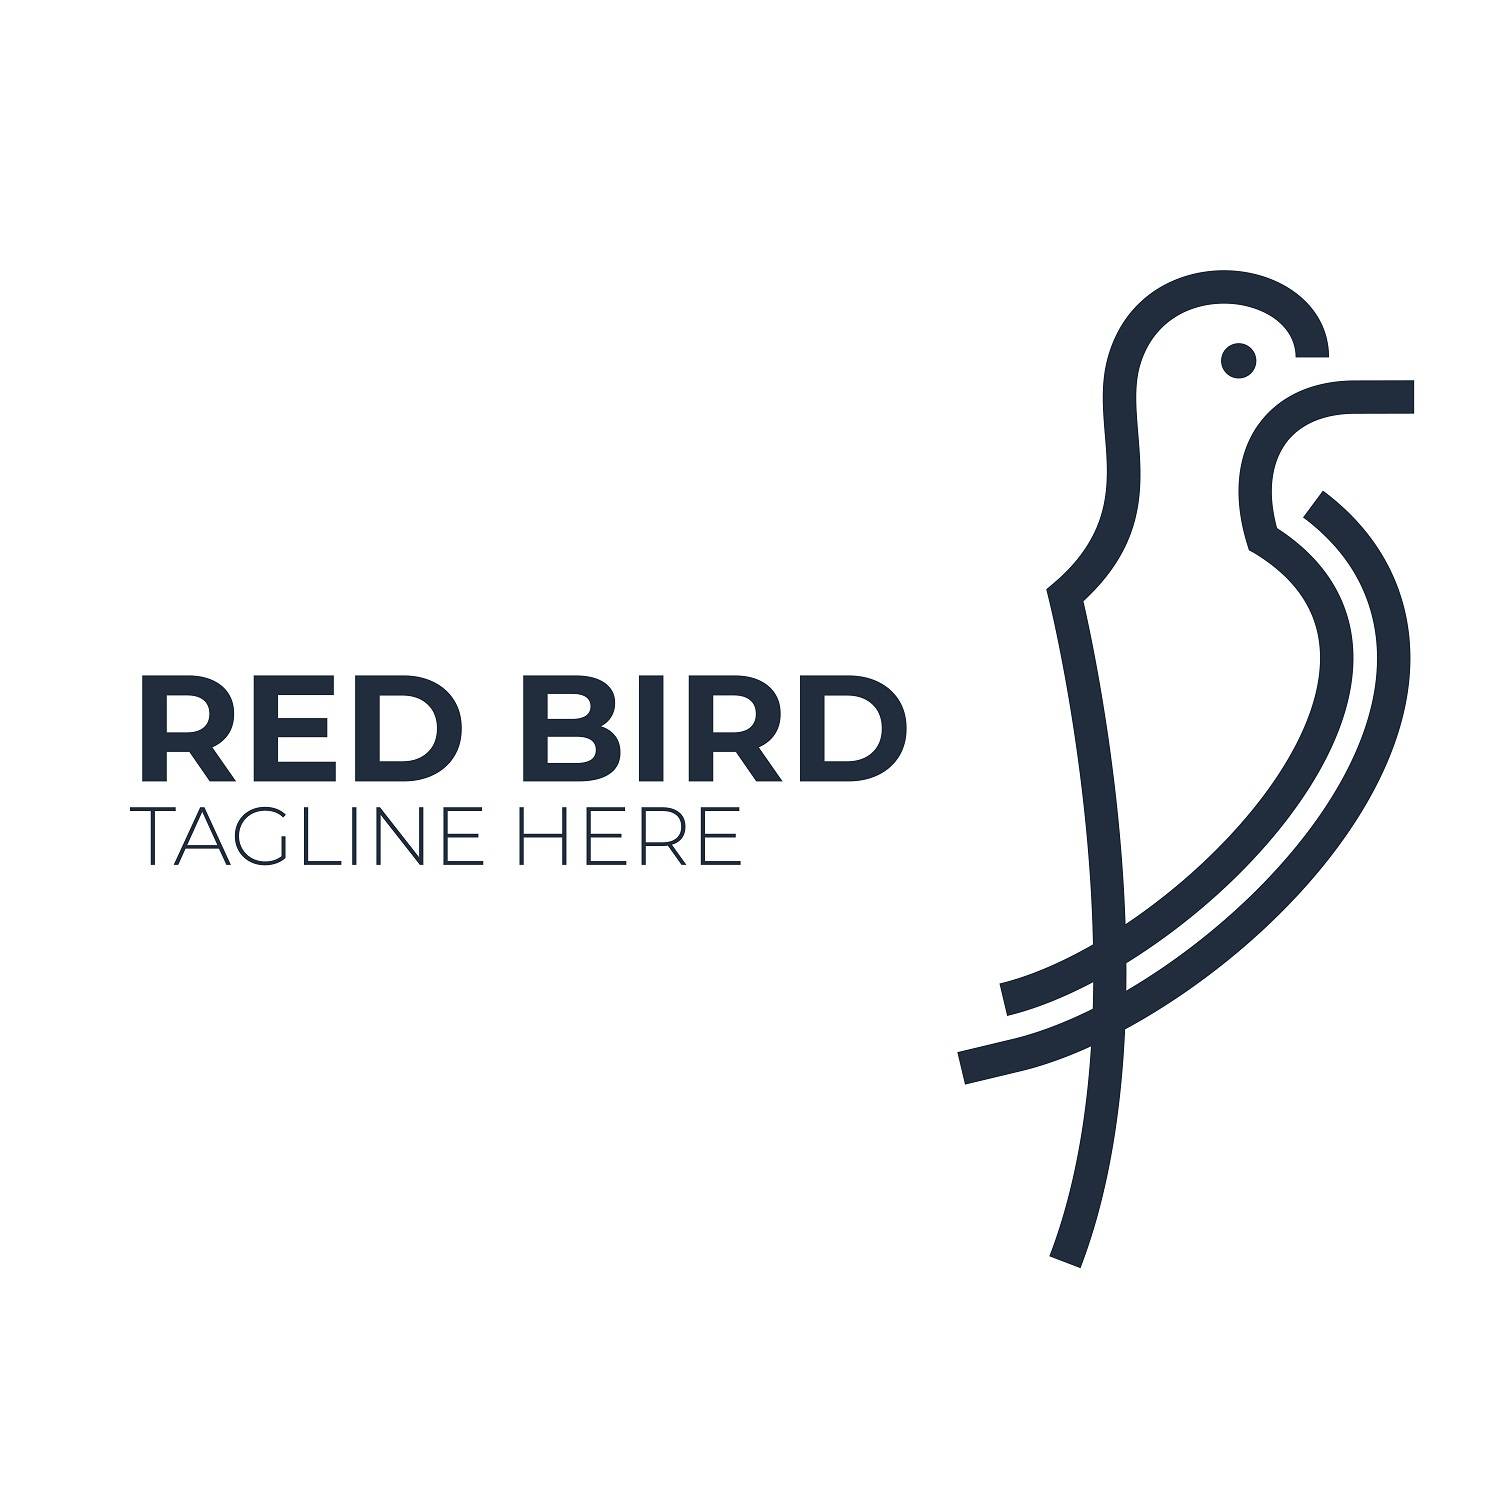 Sparrow bird logo design vector image